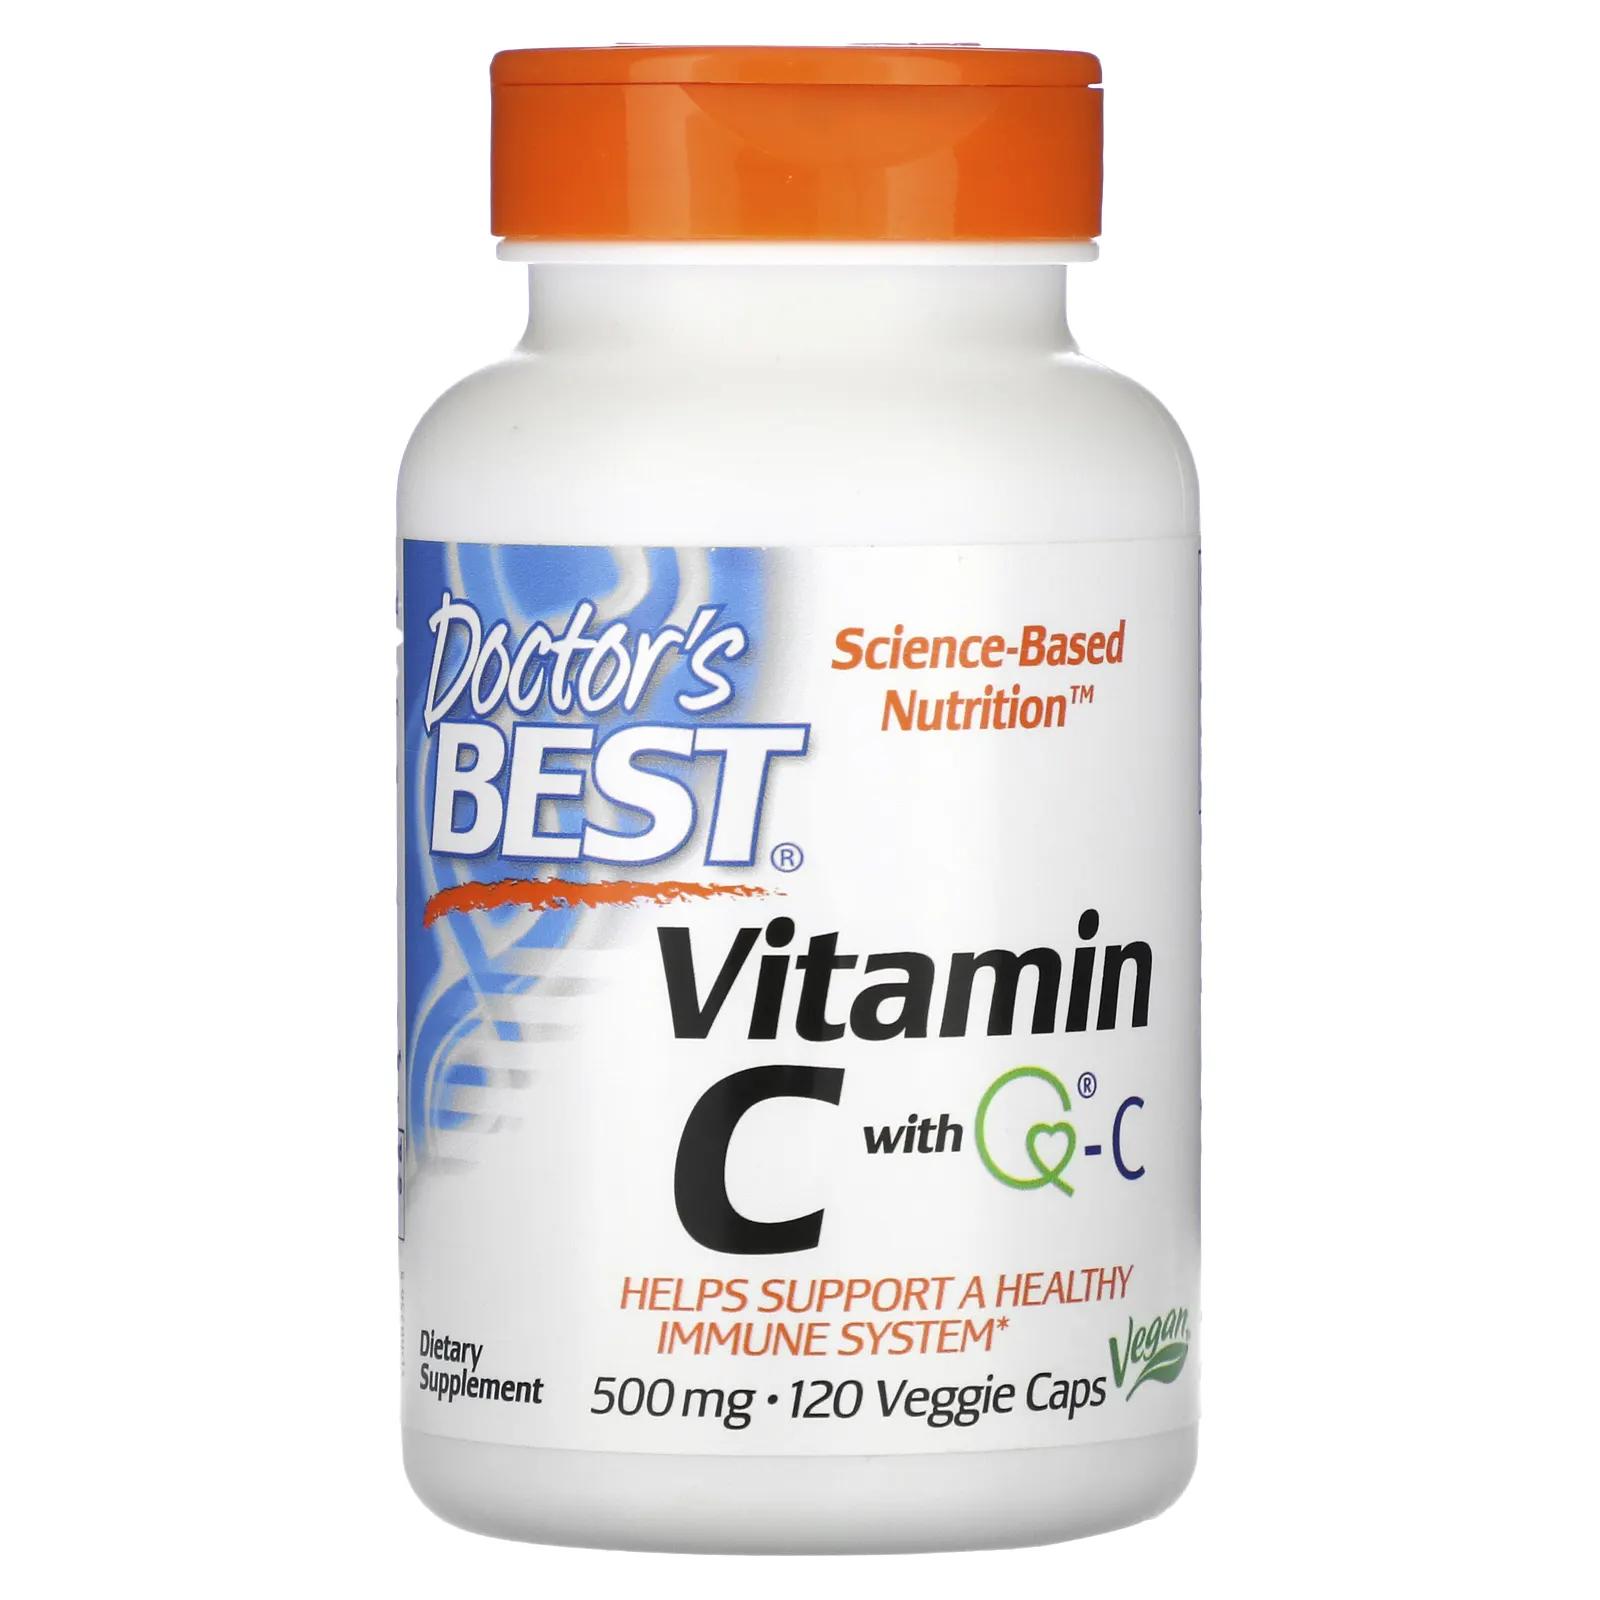 Doctor's Best Витамин C с Quali-C 500 мг 120 вегетарианских капсул витамин c с q c doctor s best 500 мг 120 капсул